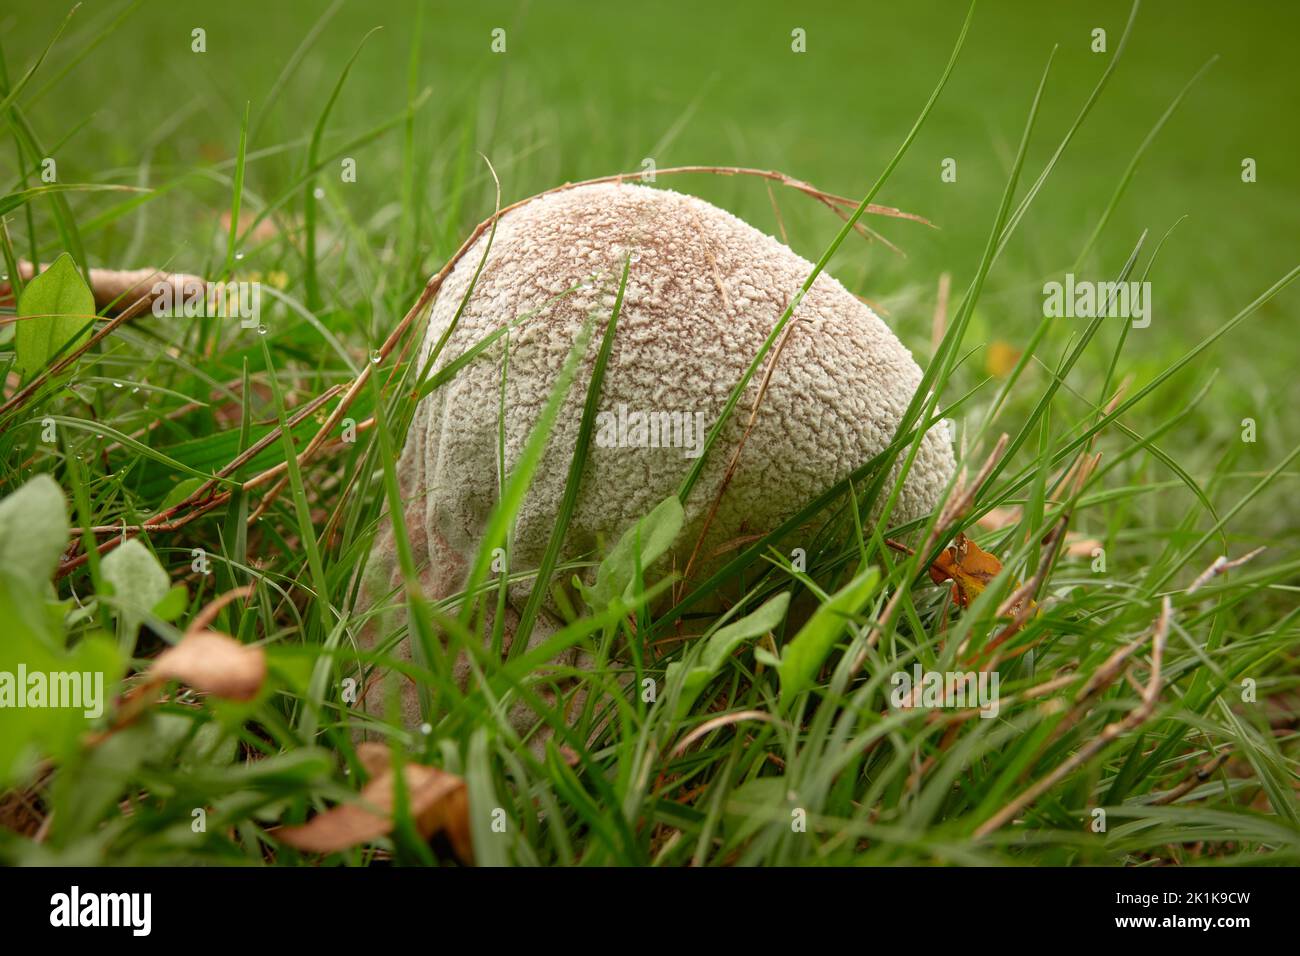 Puffball mushroom (Handkea utriformis) in grass Stock Photo